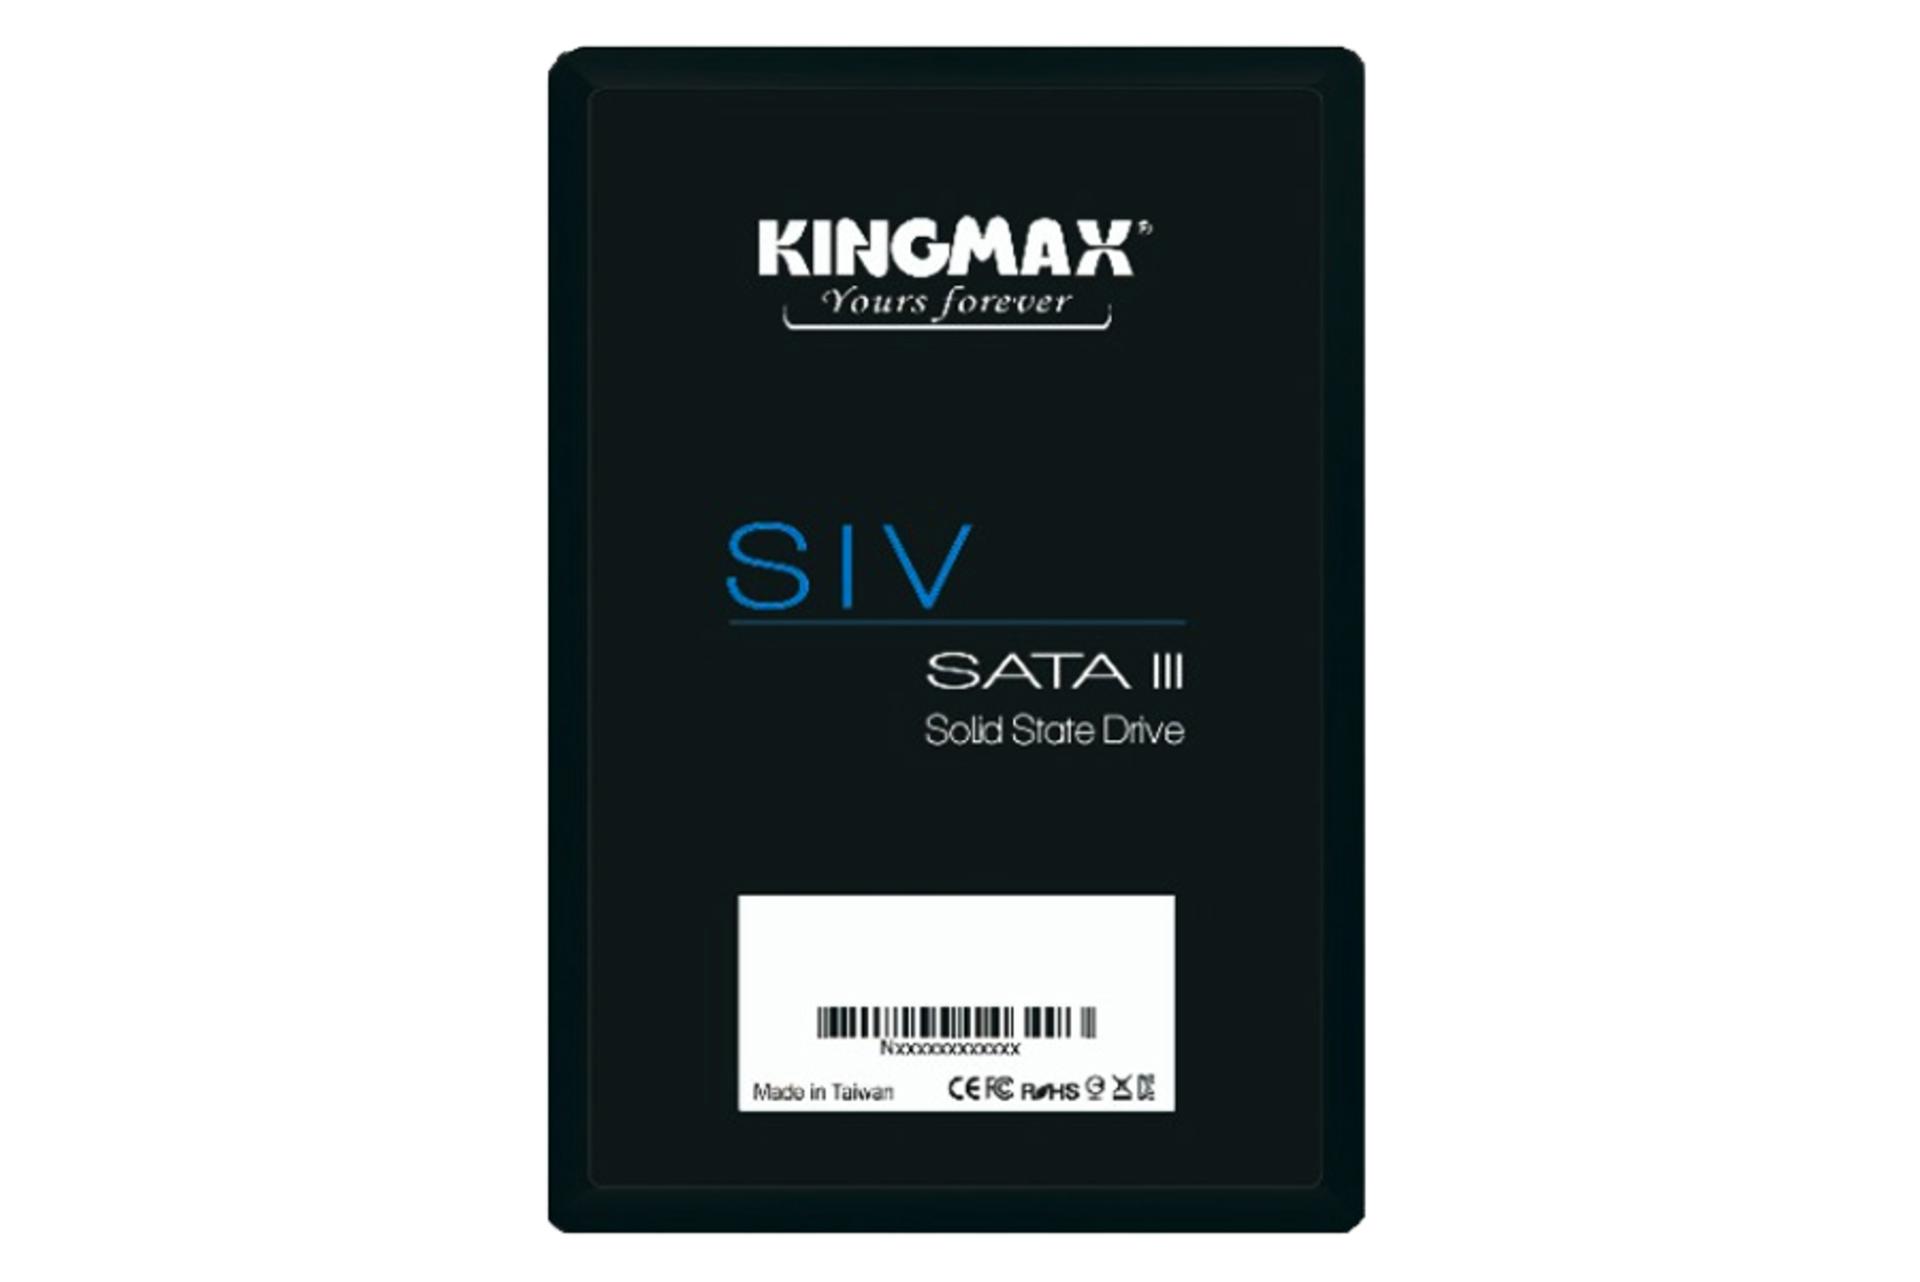 کینگ مکس SIV SATA 2.5 Inch ظرفیت 256 گیگابایت